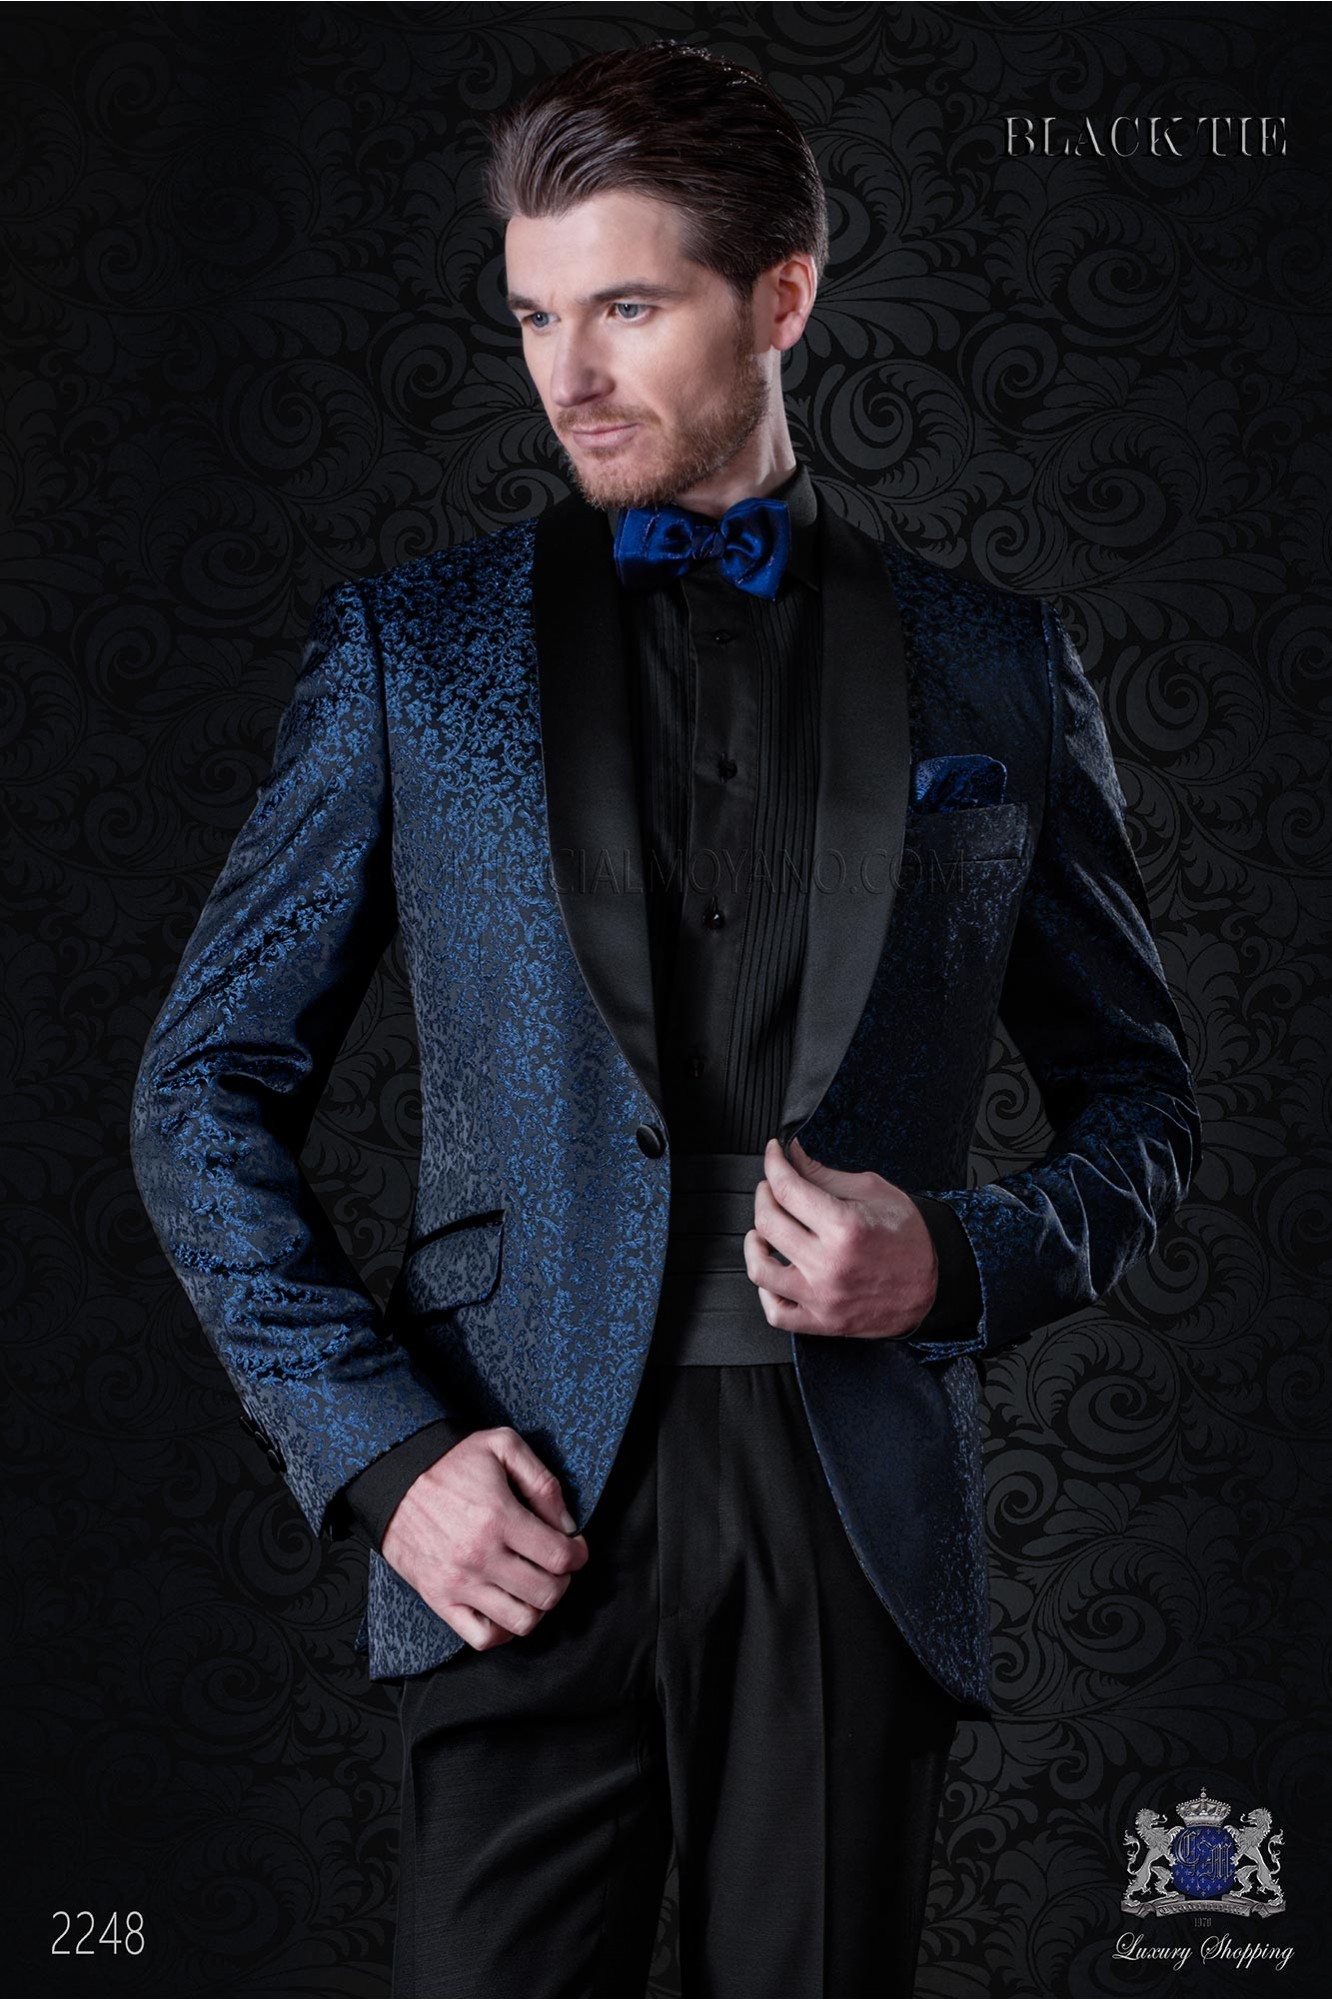 Esmoquin italiano de jacquard combinado azul y negro en mixto seda modelo: 2248 Mario Moyano colección Black Tie